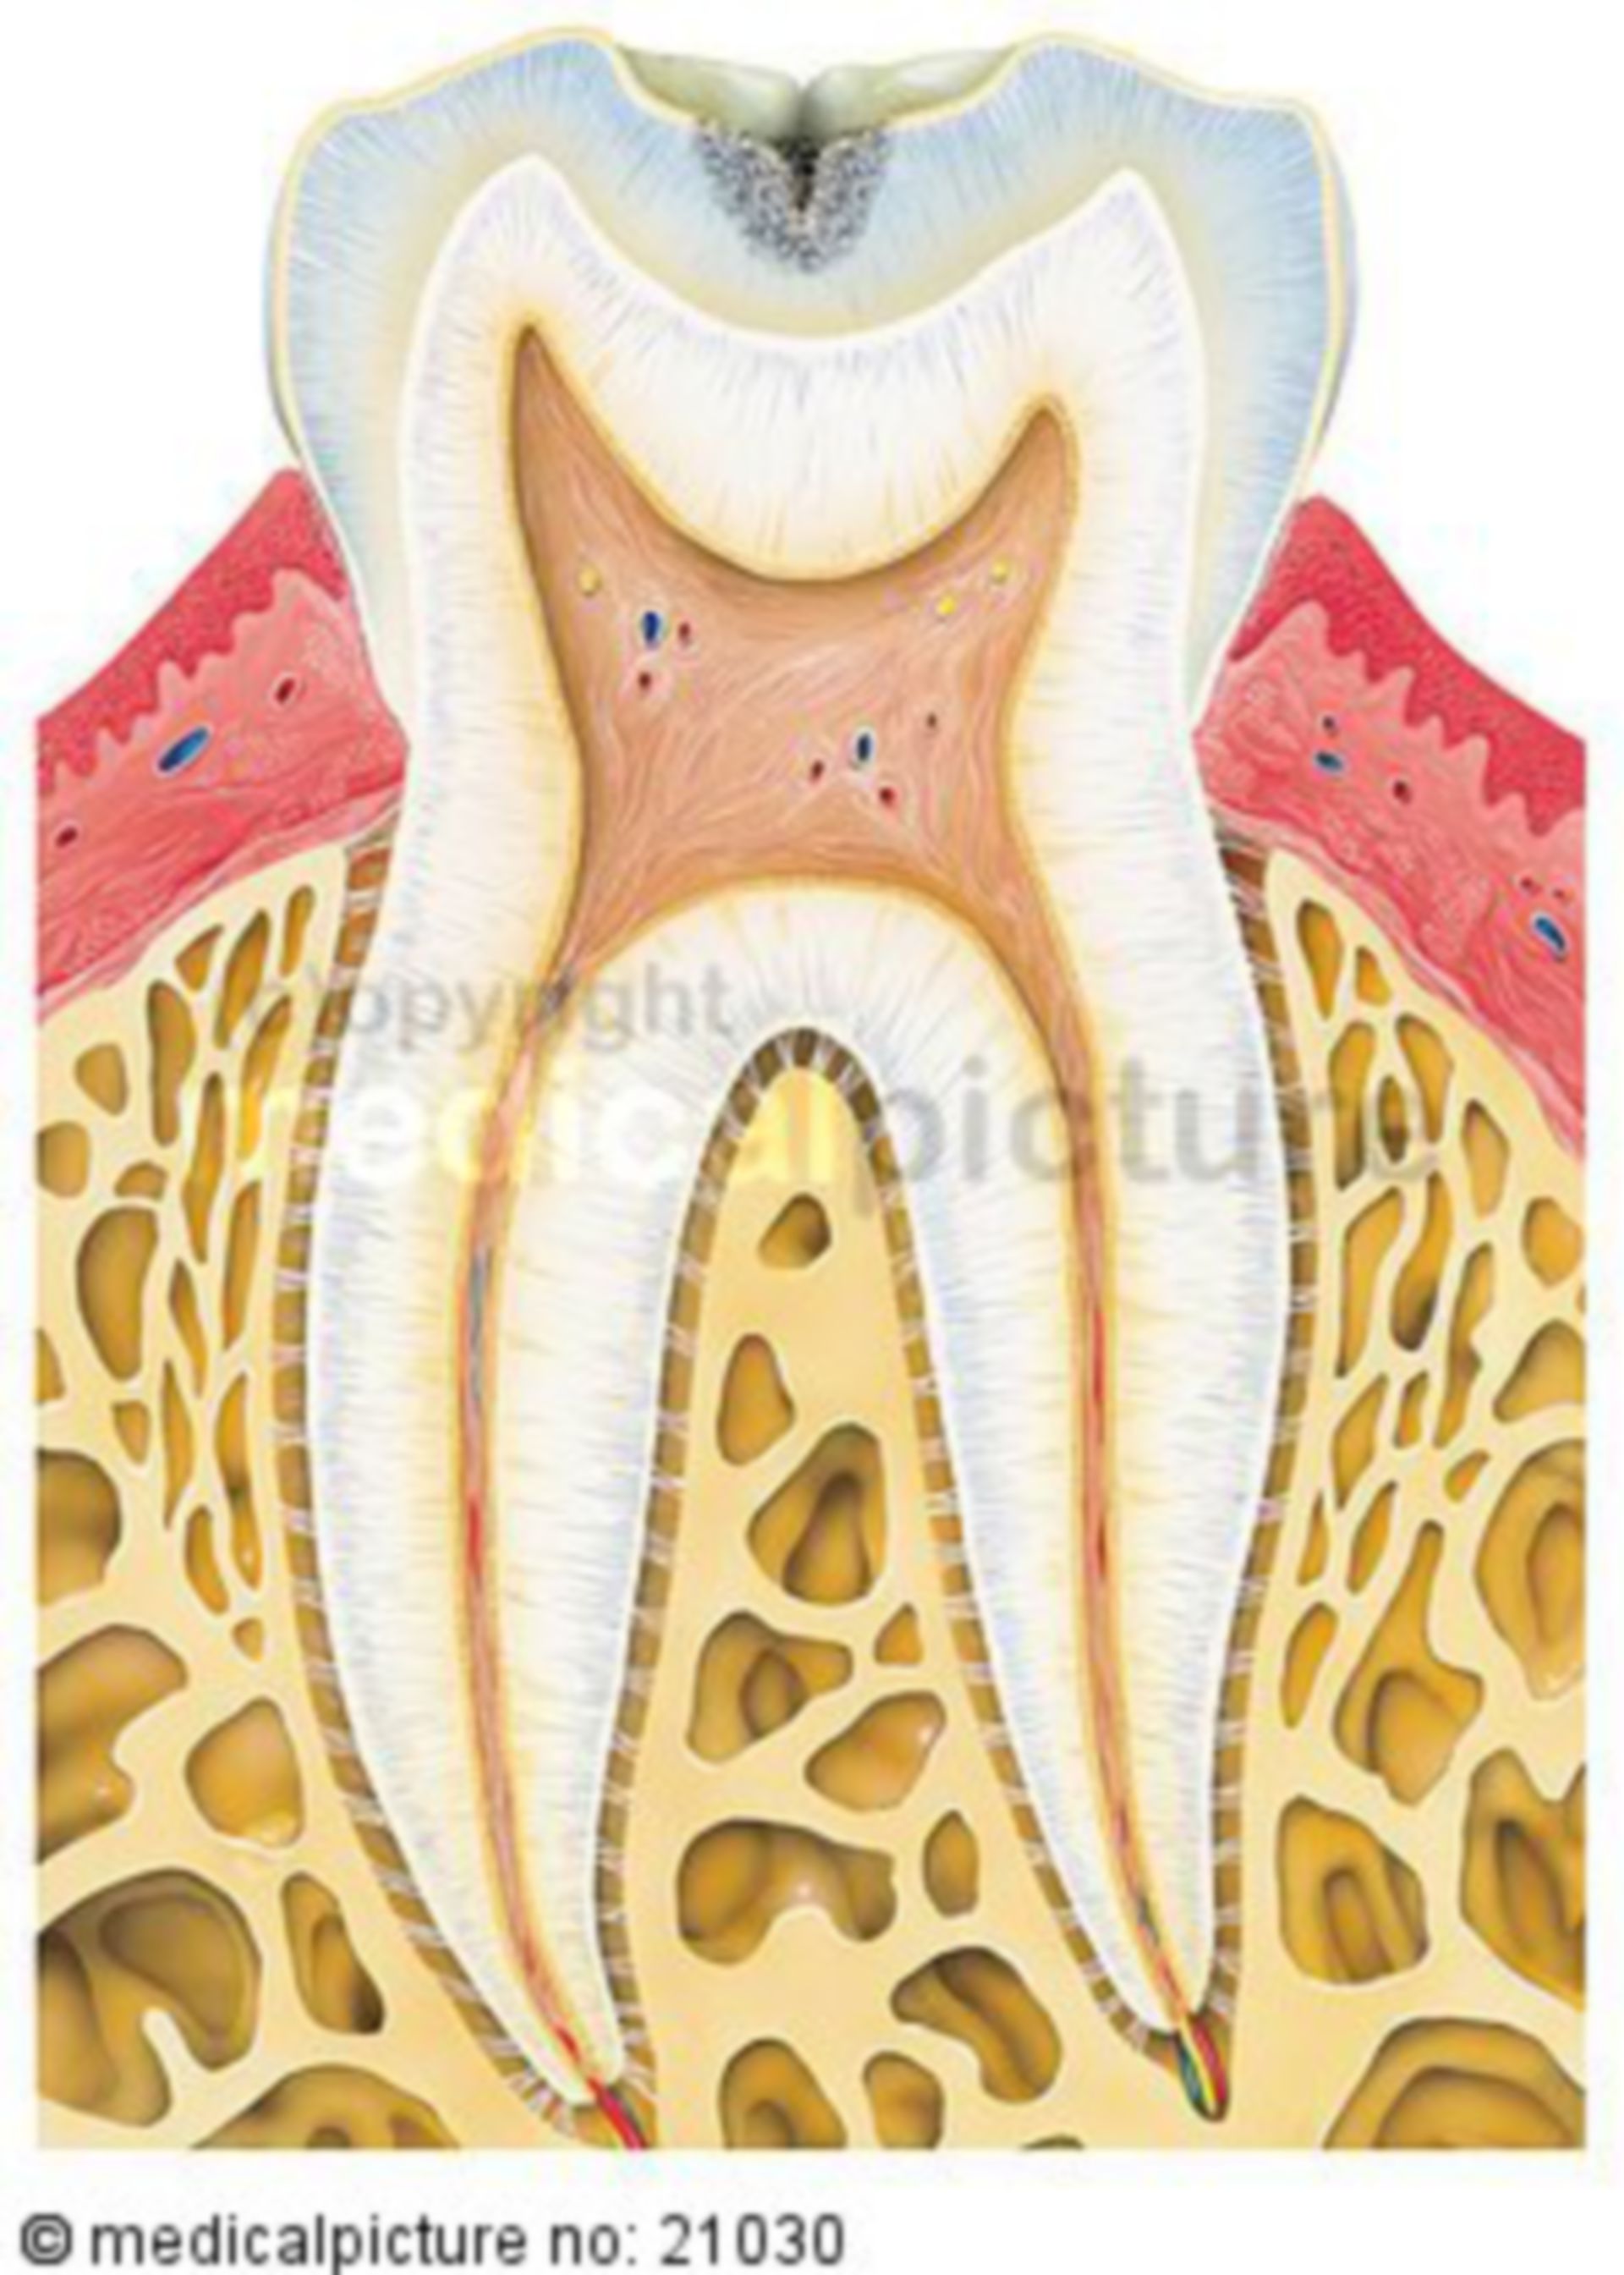  Karies befallener Zahn 
